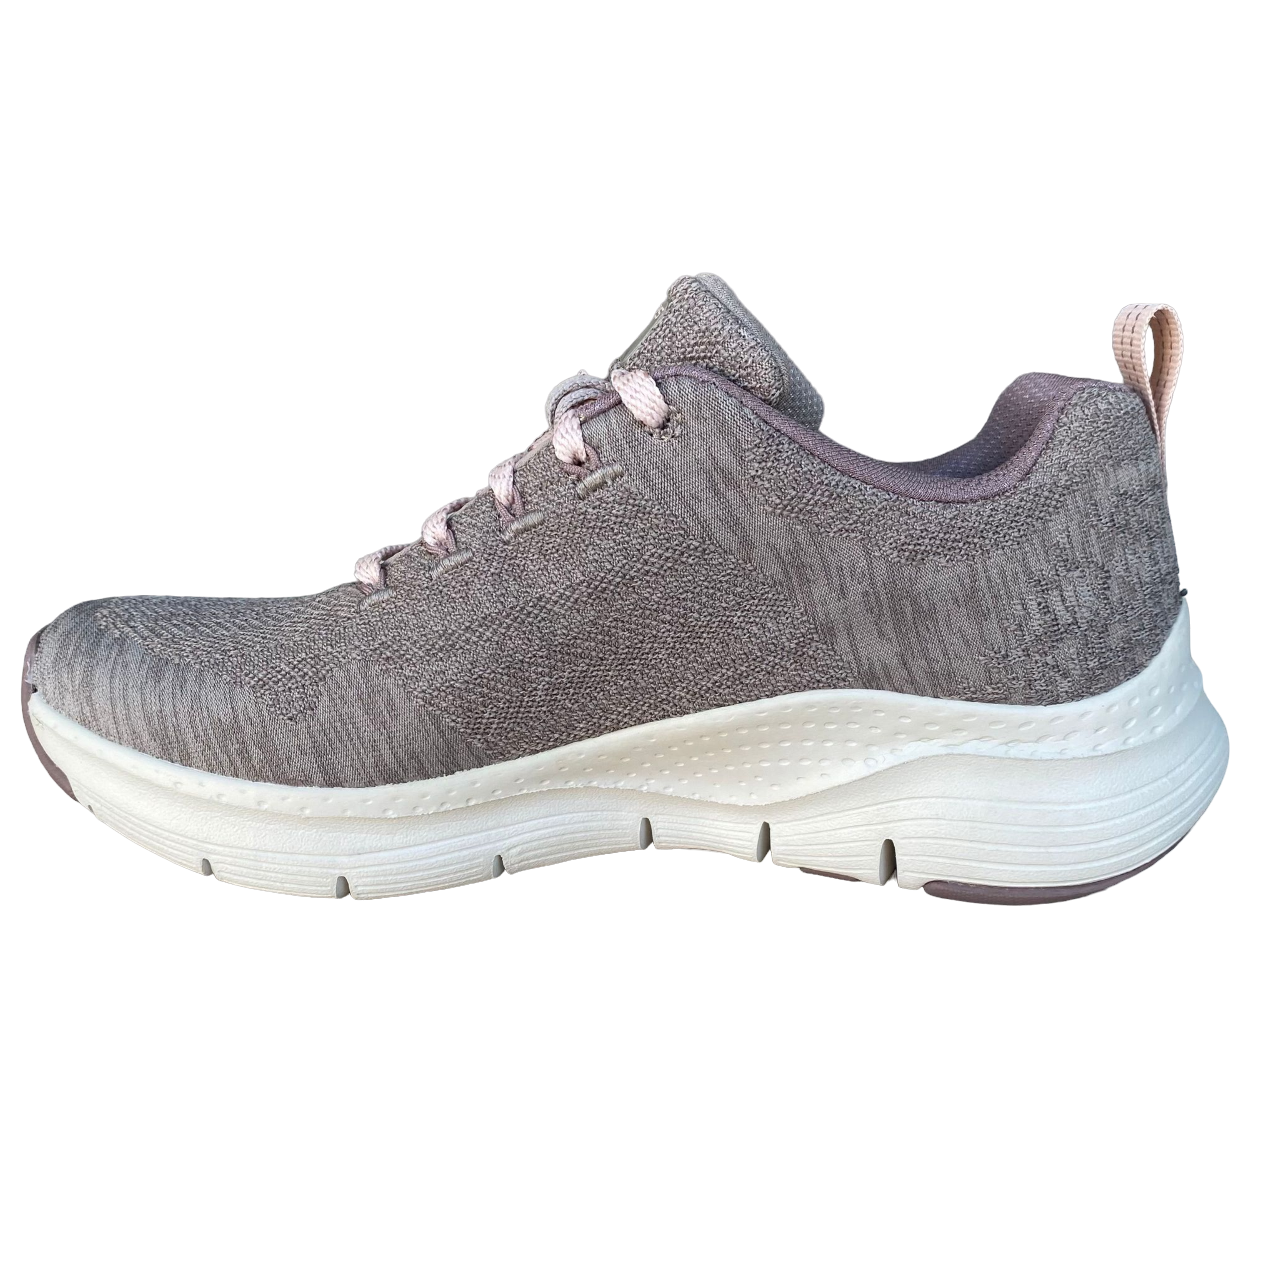 Skechers scarpa sneakers da donna Arch Fit Comfy Wave 149414/DKTP tortora scuro